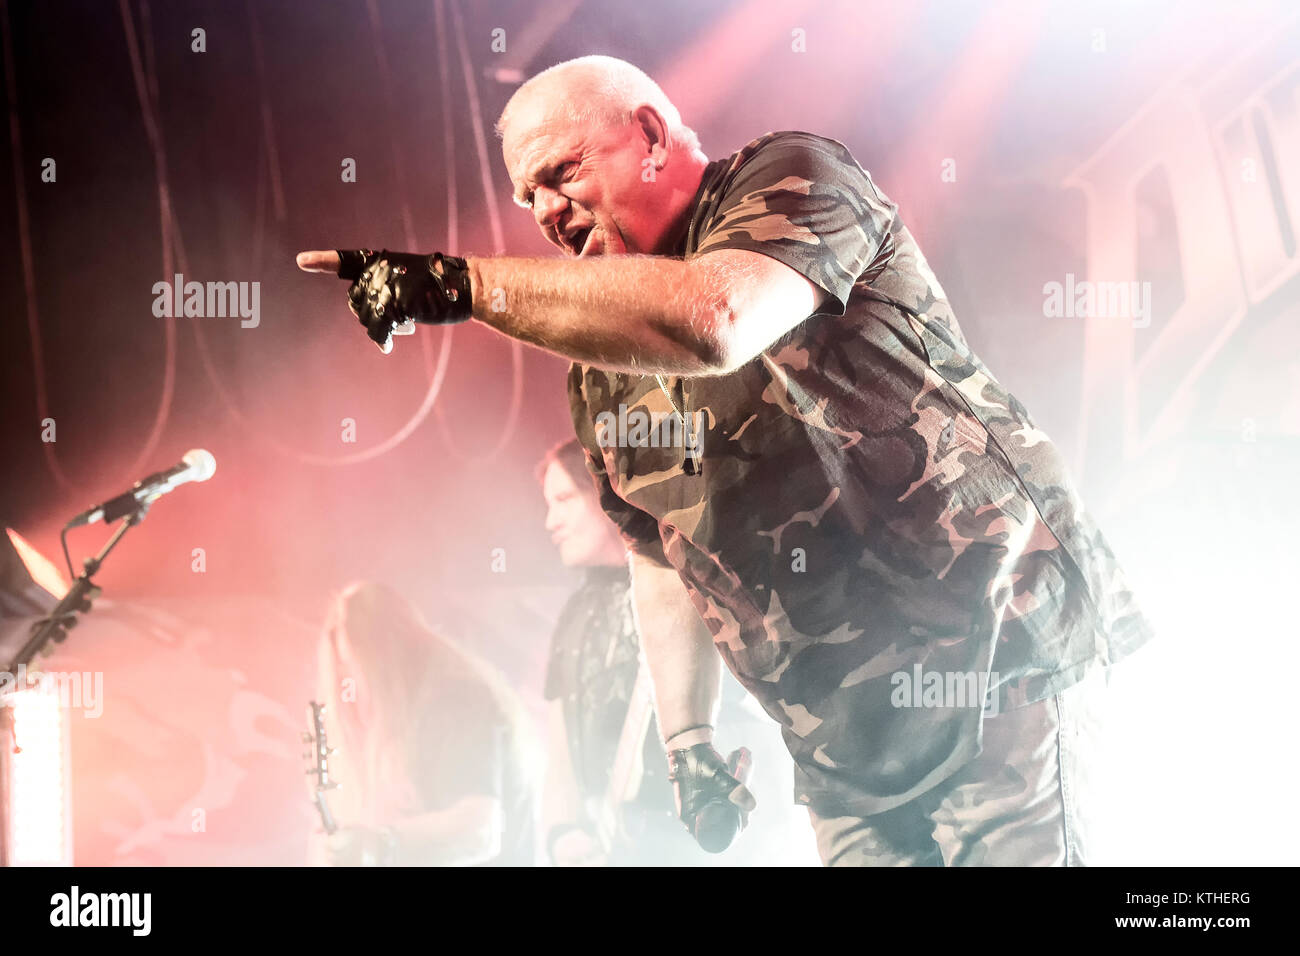 Il tedesco heavy metal band U.D.O. esegue un concerto dal vivo a livello di Unione europea in scena a Oslo. Qui band fondatore e cantante Udo Dirkschneider è visto dal vivo sul palco. Norvegia, 18/02 2016. Foto Stock